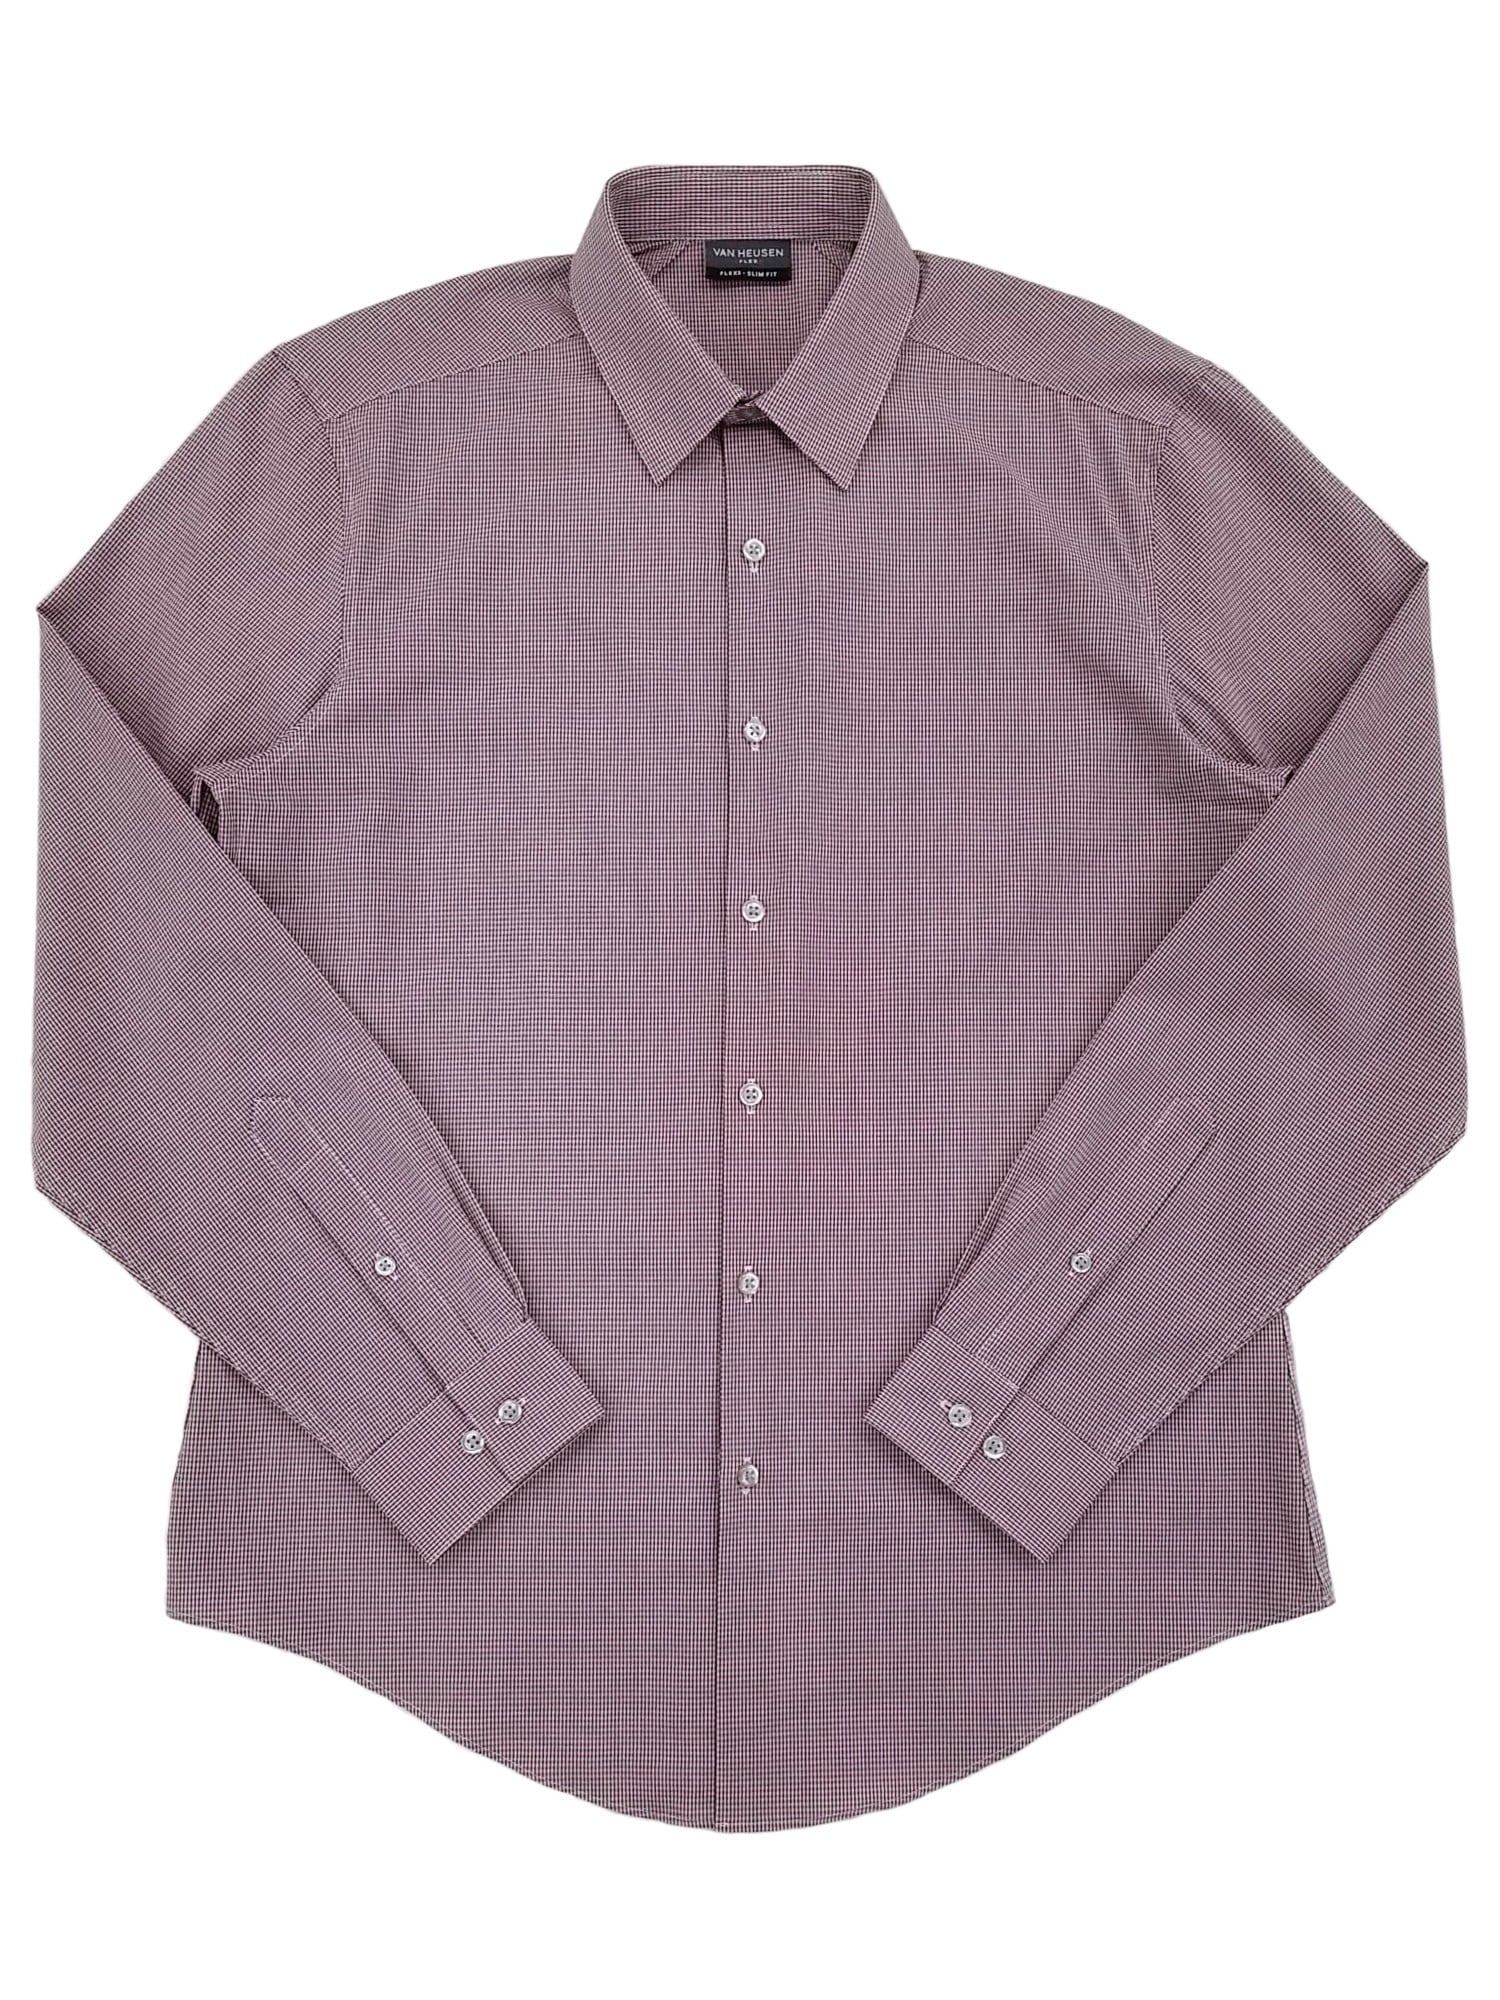 Van Heusen Flex Mens Mulberry Slim Fit Long Sleeve Dress Shirt 15-15.5  32/33 